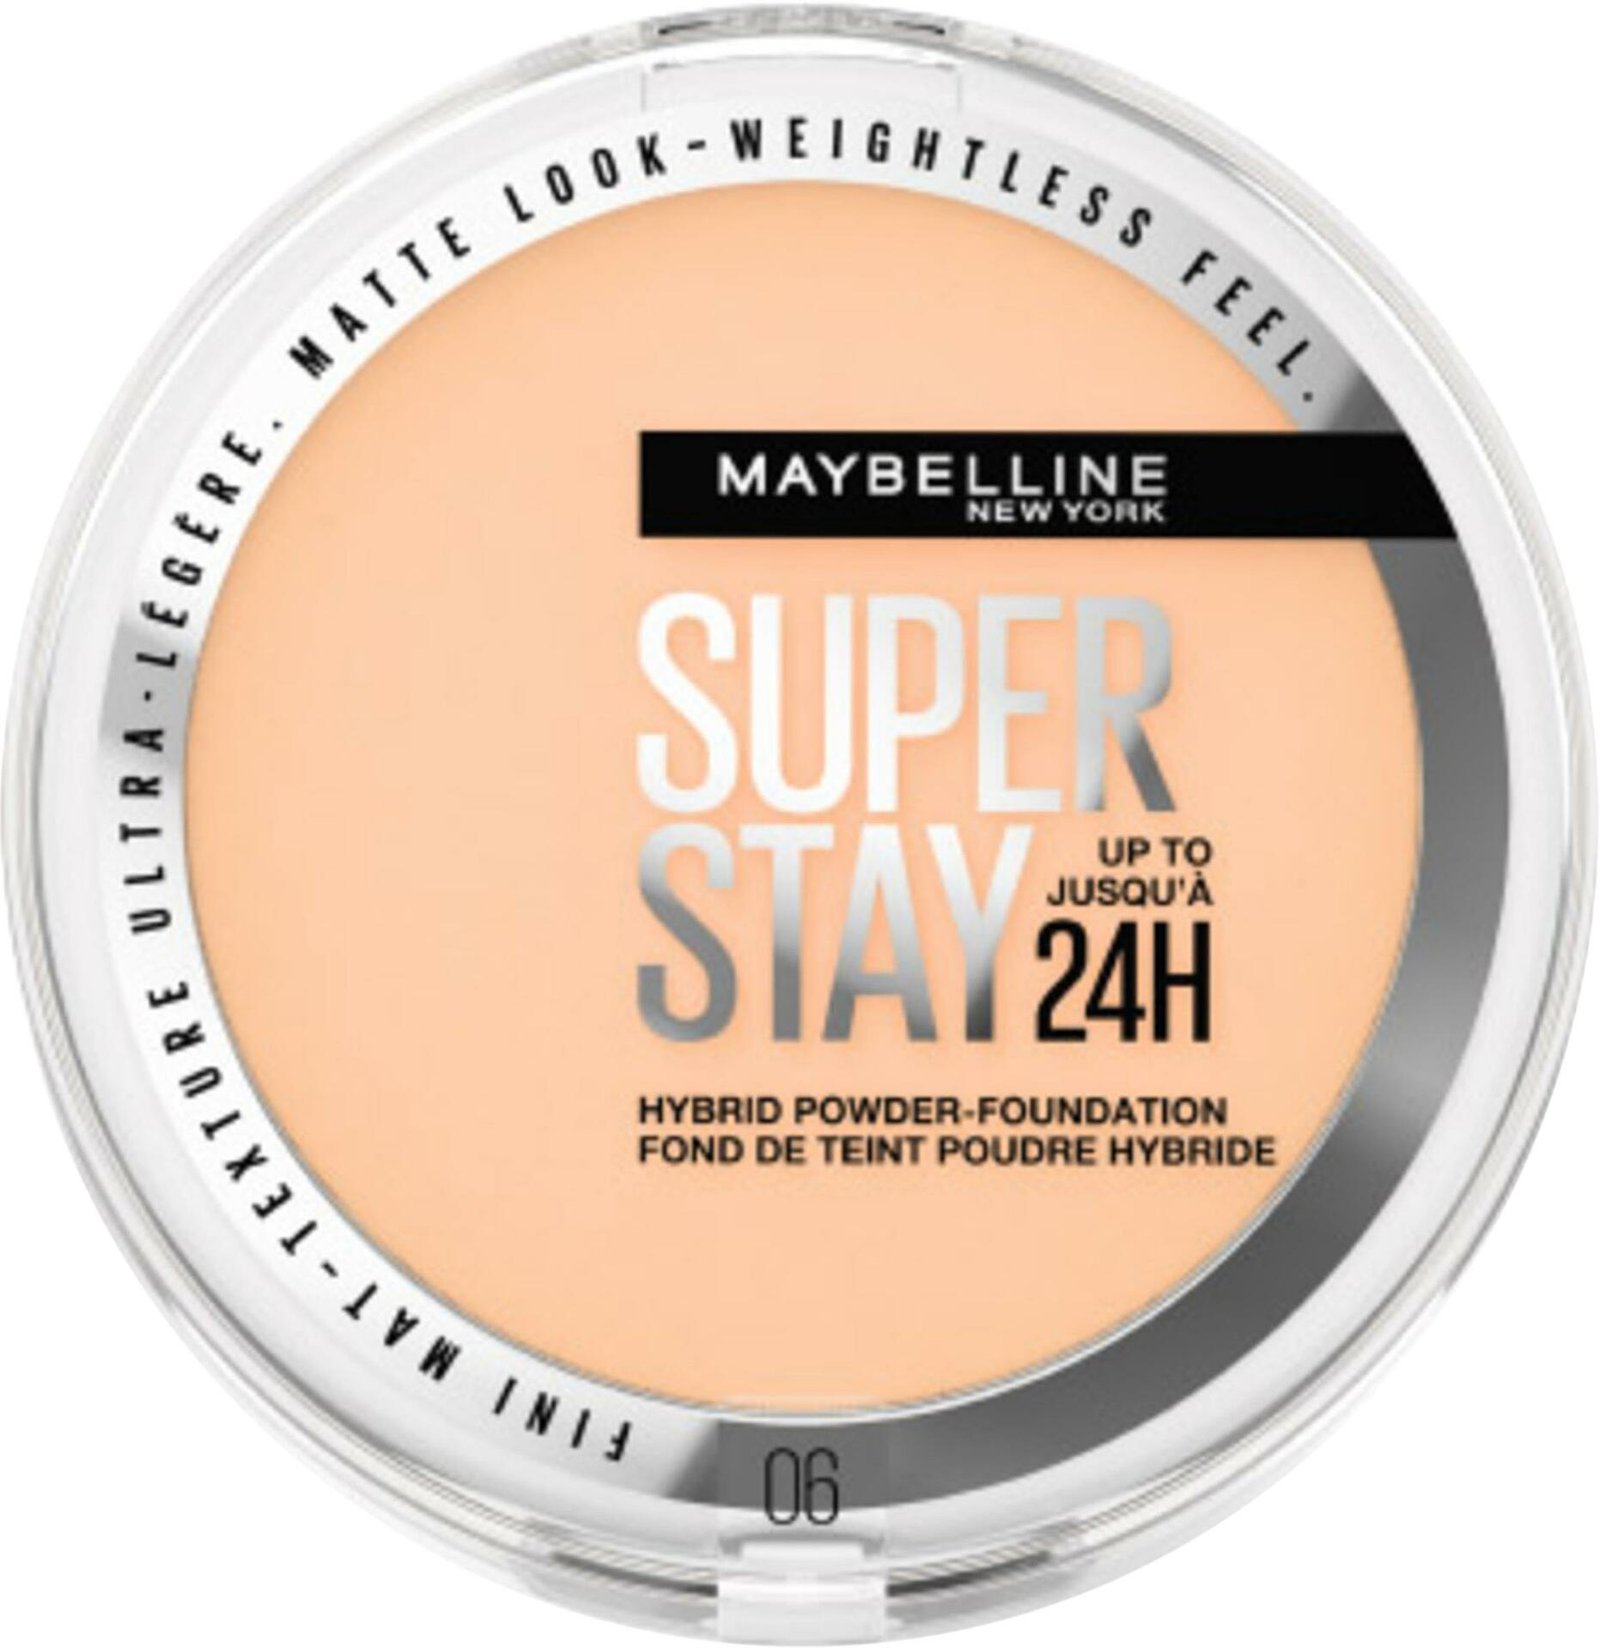 Maybelline New York Superstay 24H Hybrid Powder Foundation 06